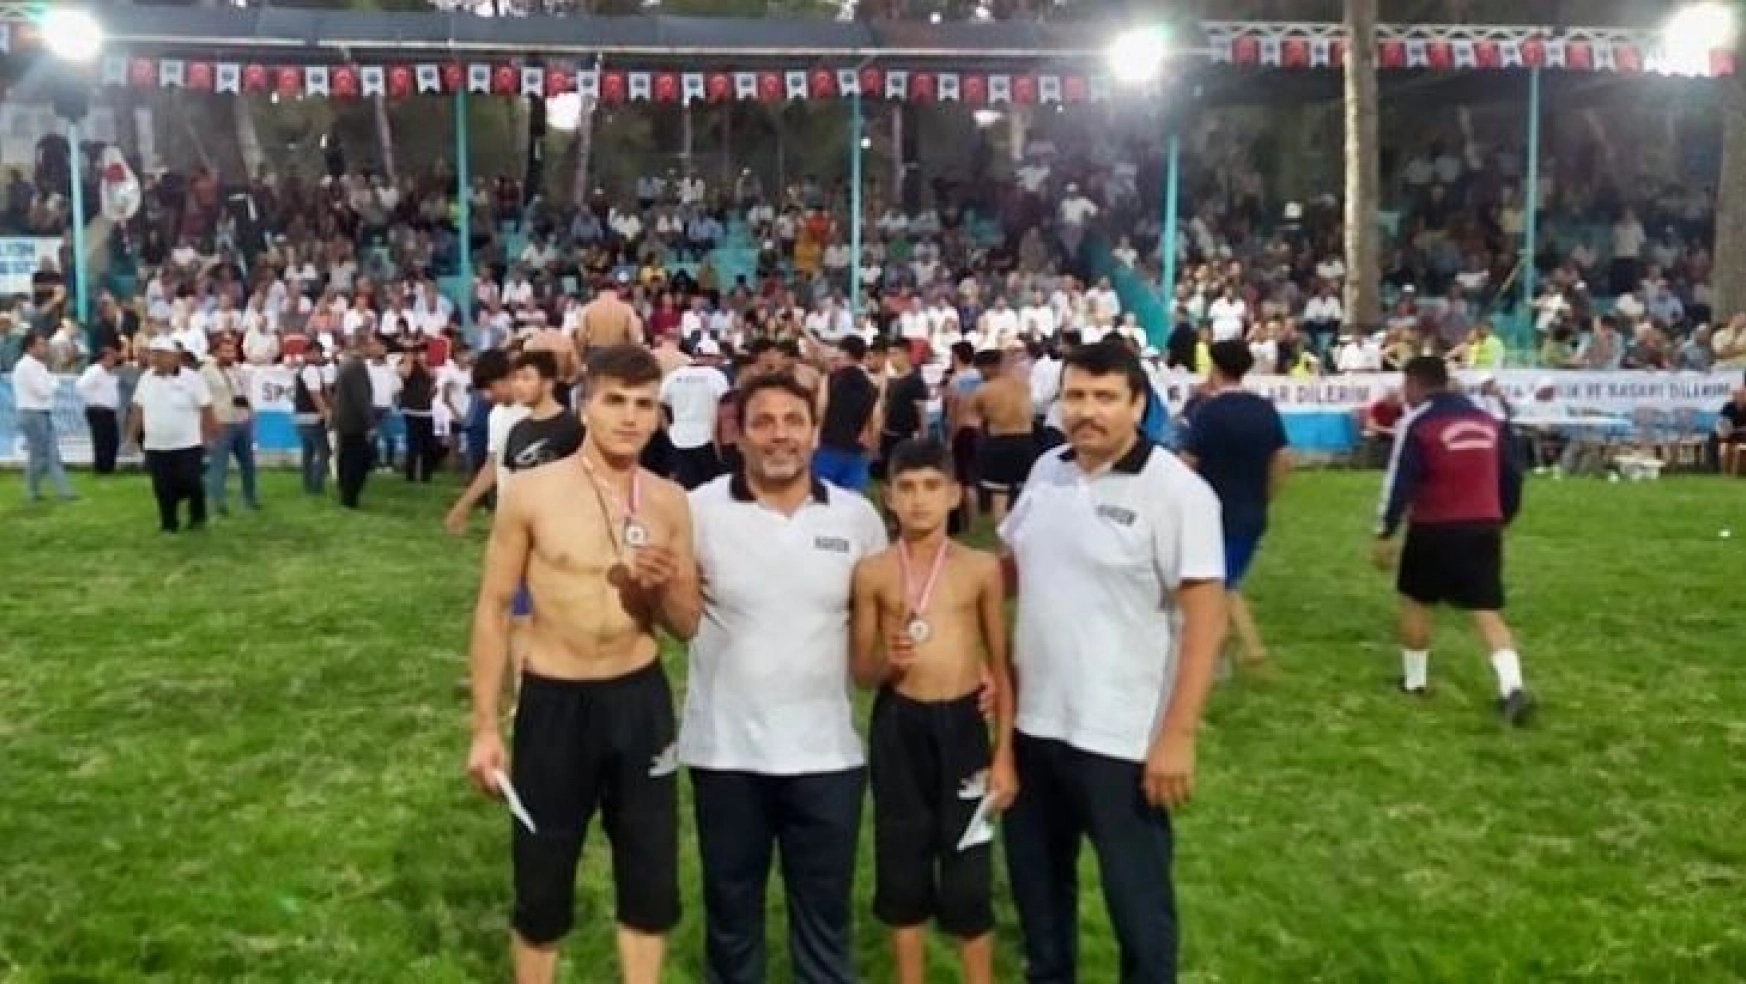 Antakya Belediyesi güreş takımının başarısı